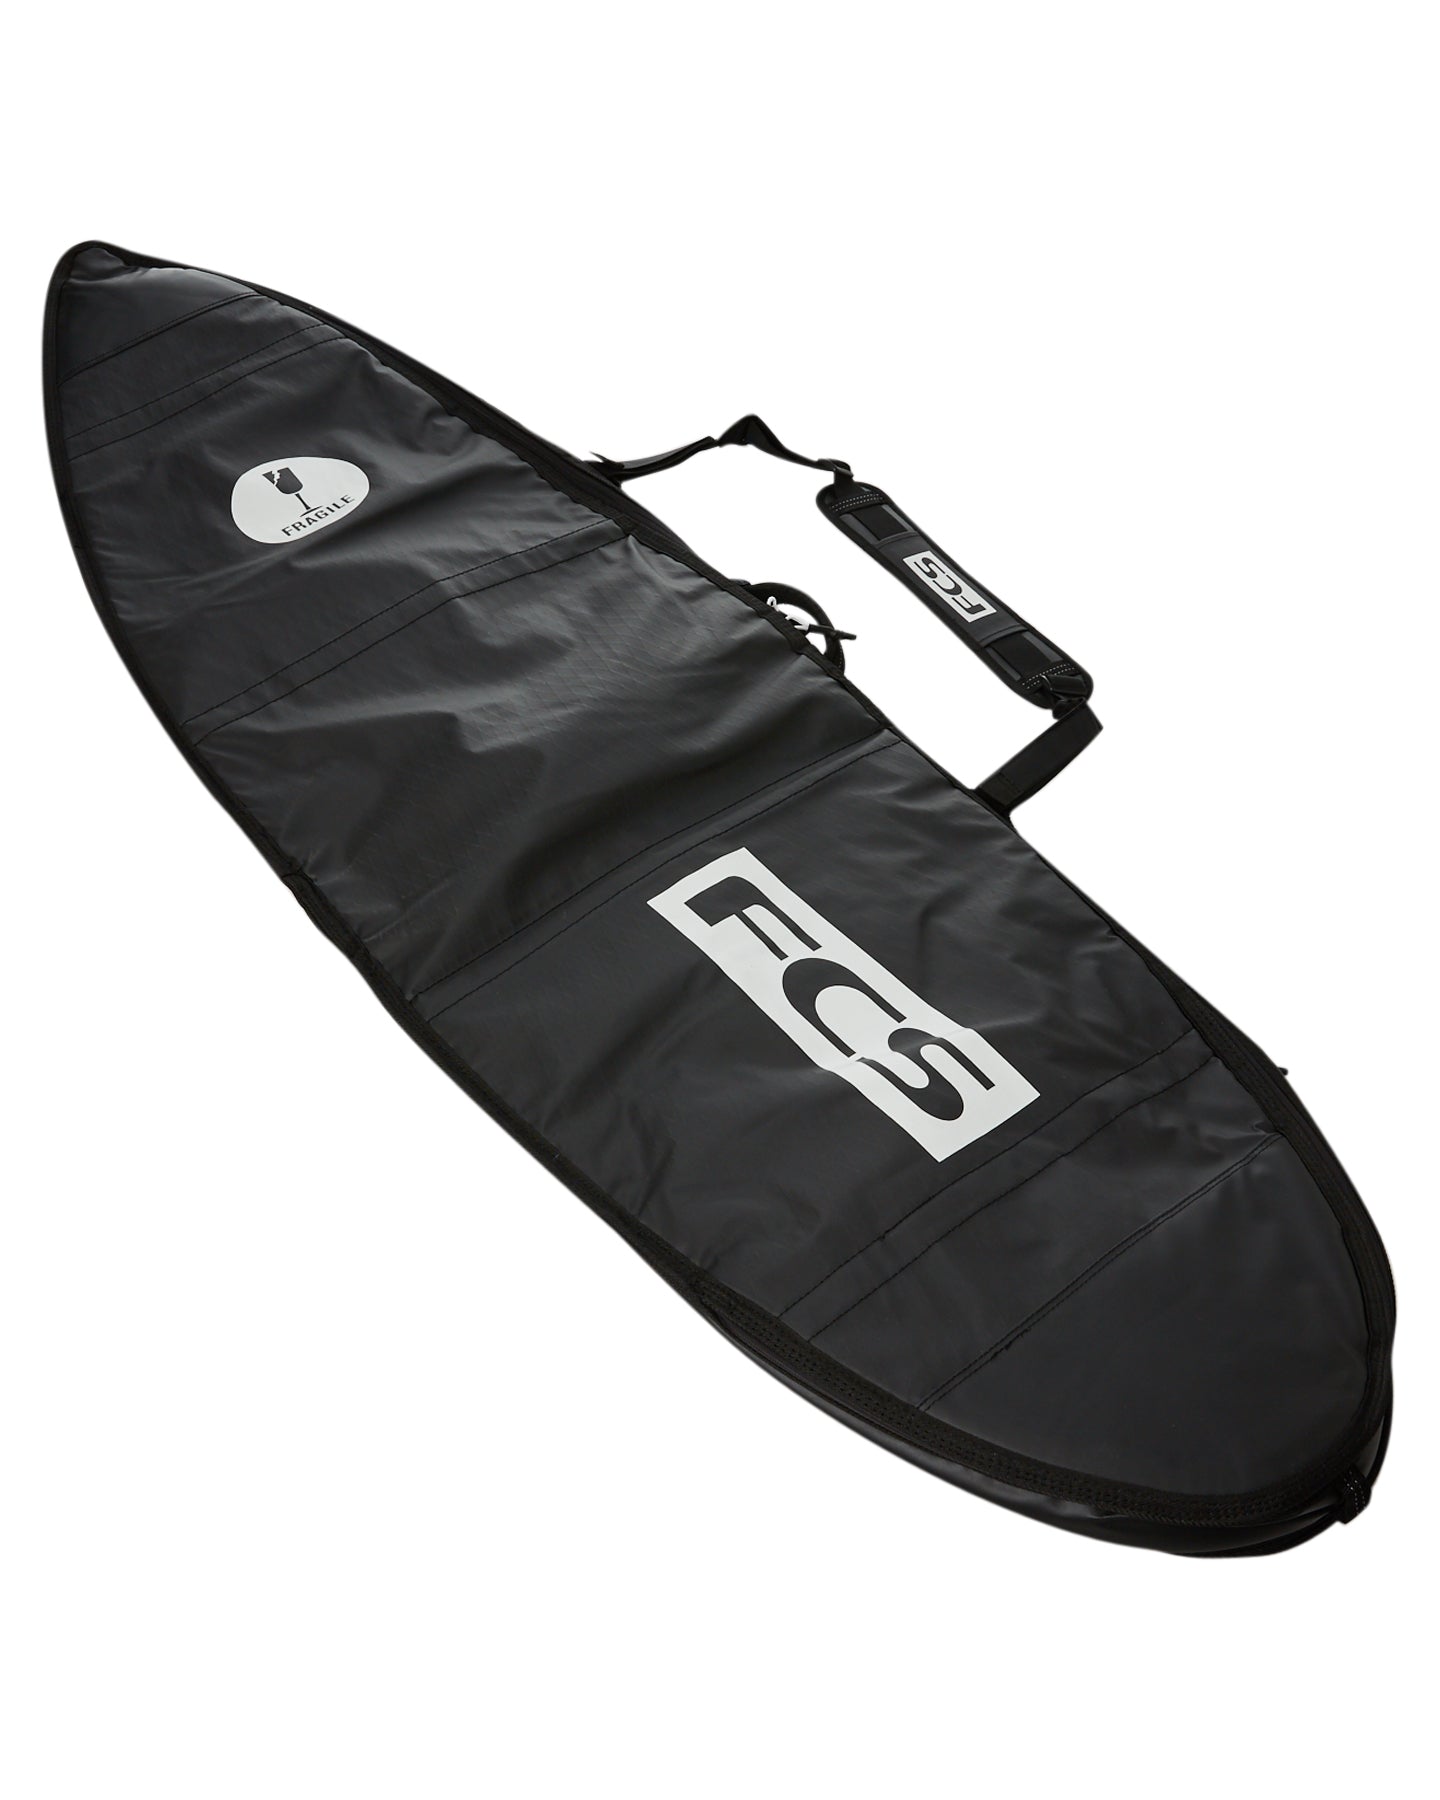 FCS Travel 1 Funboard Boardbag Black-Grey 6ft7in